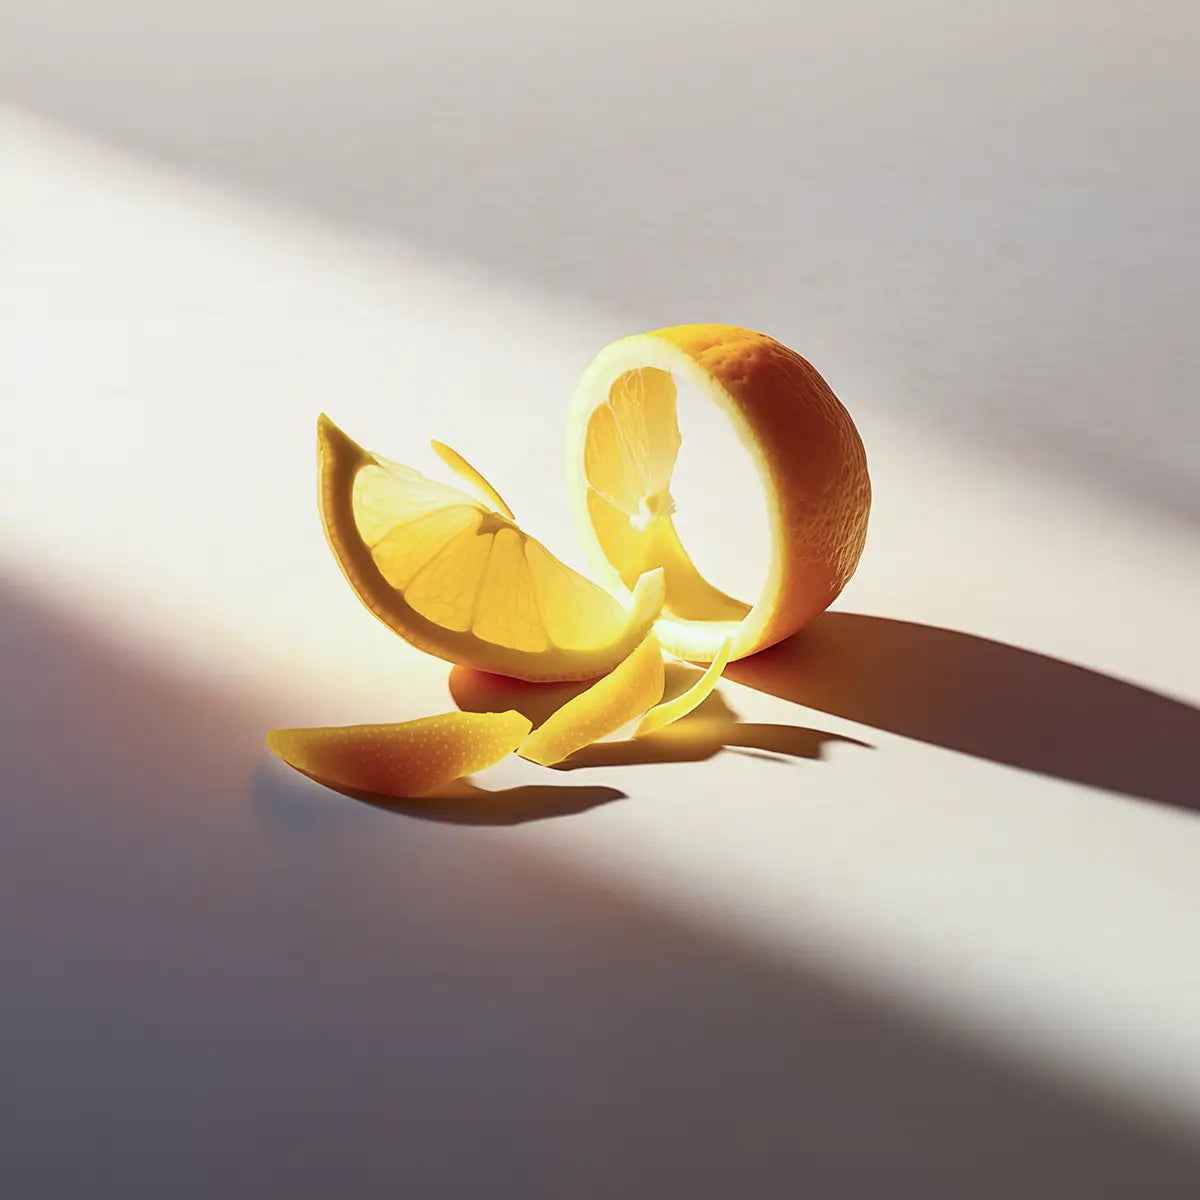 citron och citronskal i en artistik uppställning